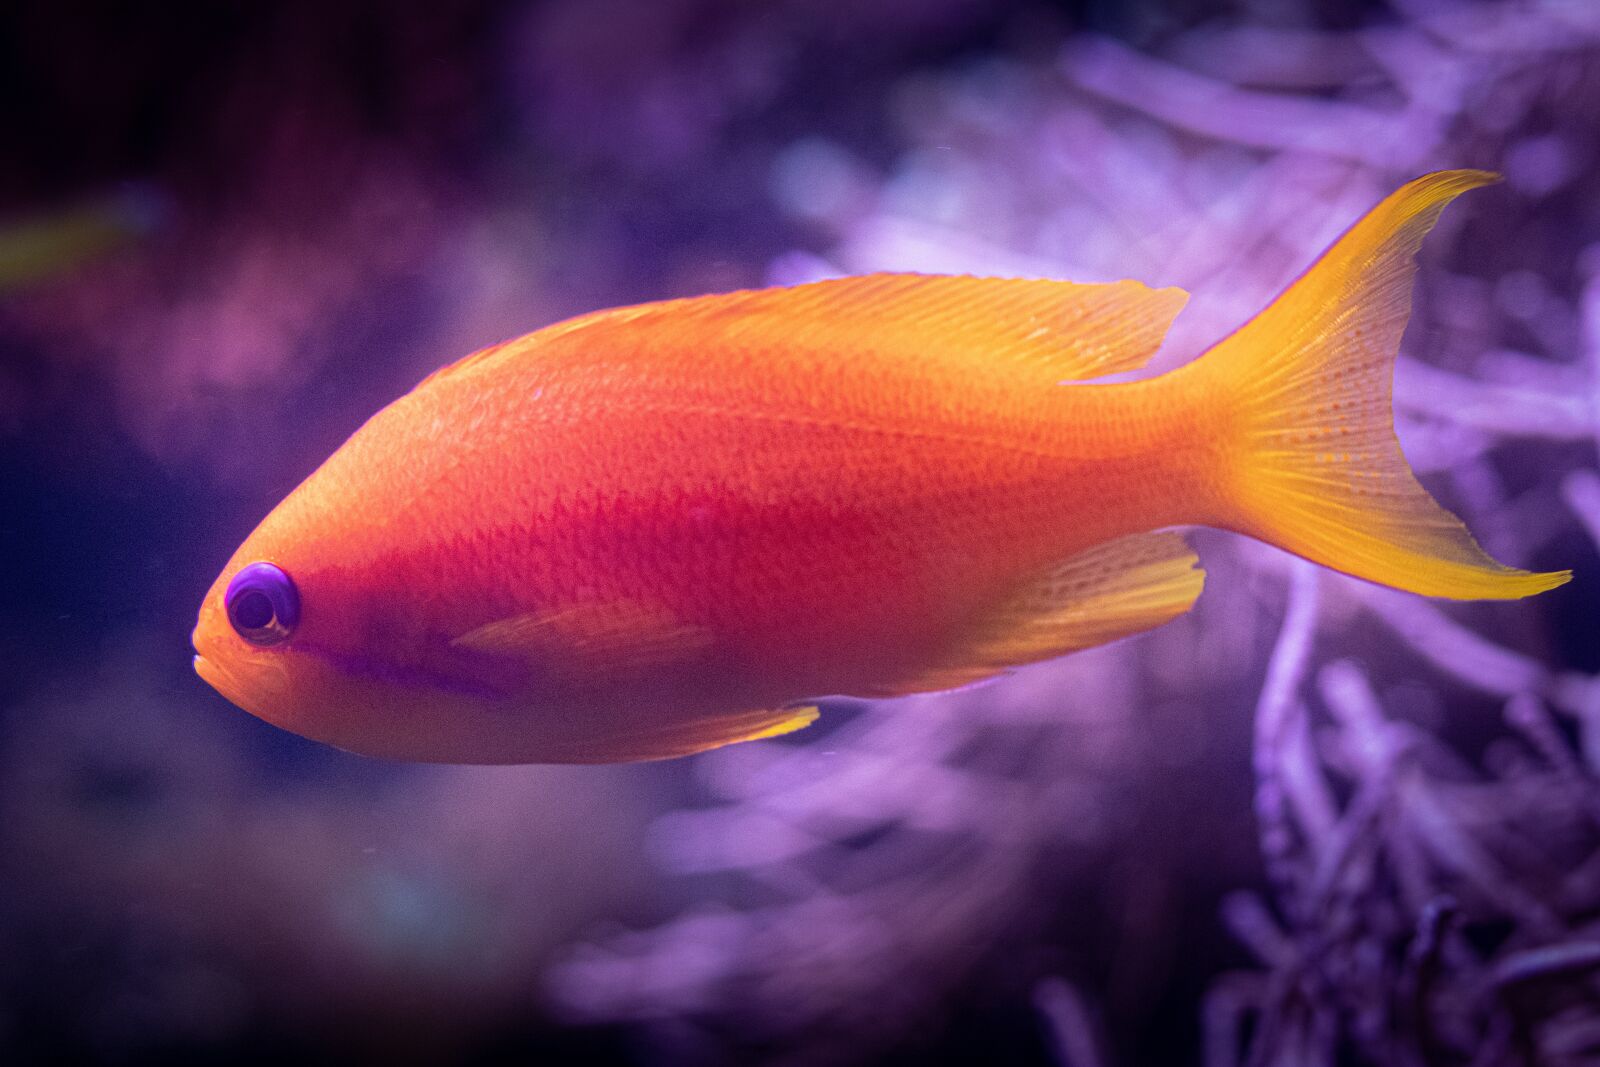 Canon EOS 80D sample photo. Fish, aquarium, underwater photography